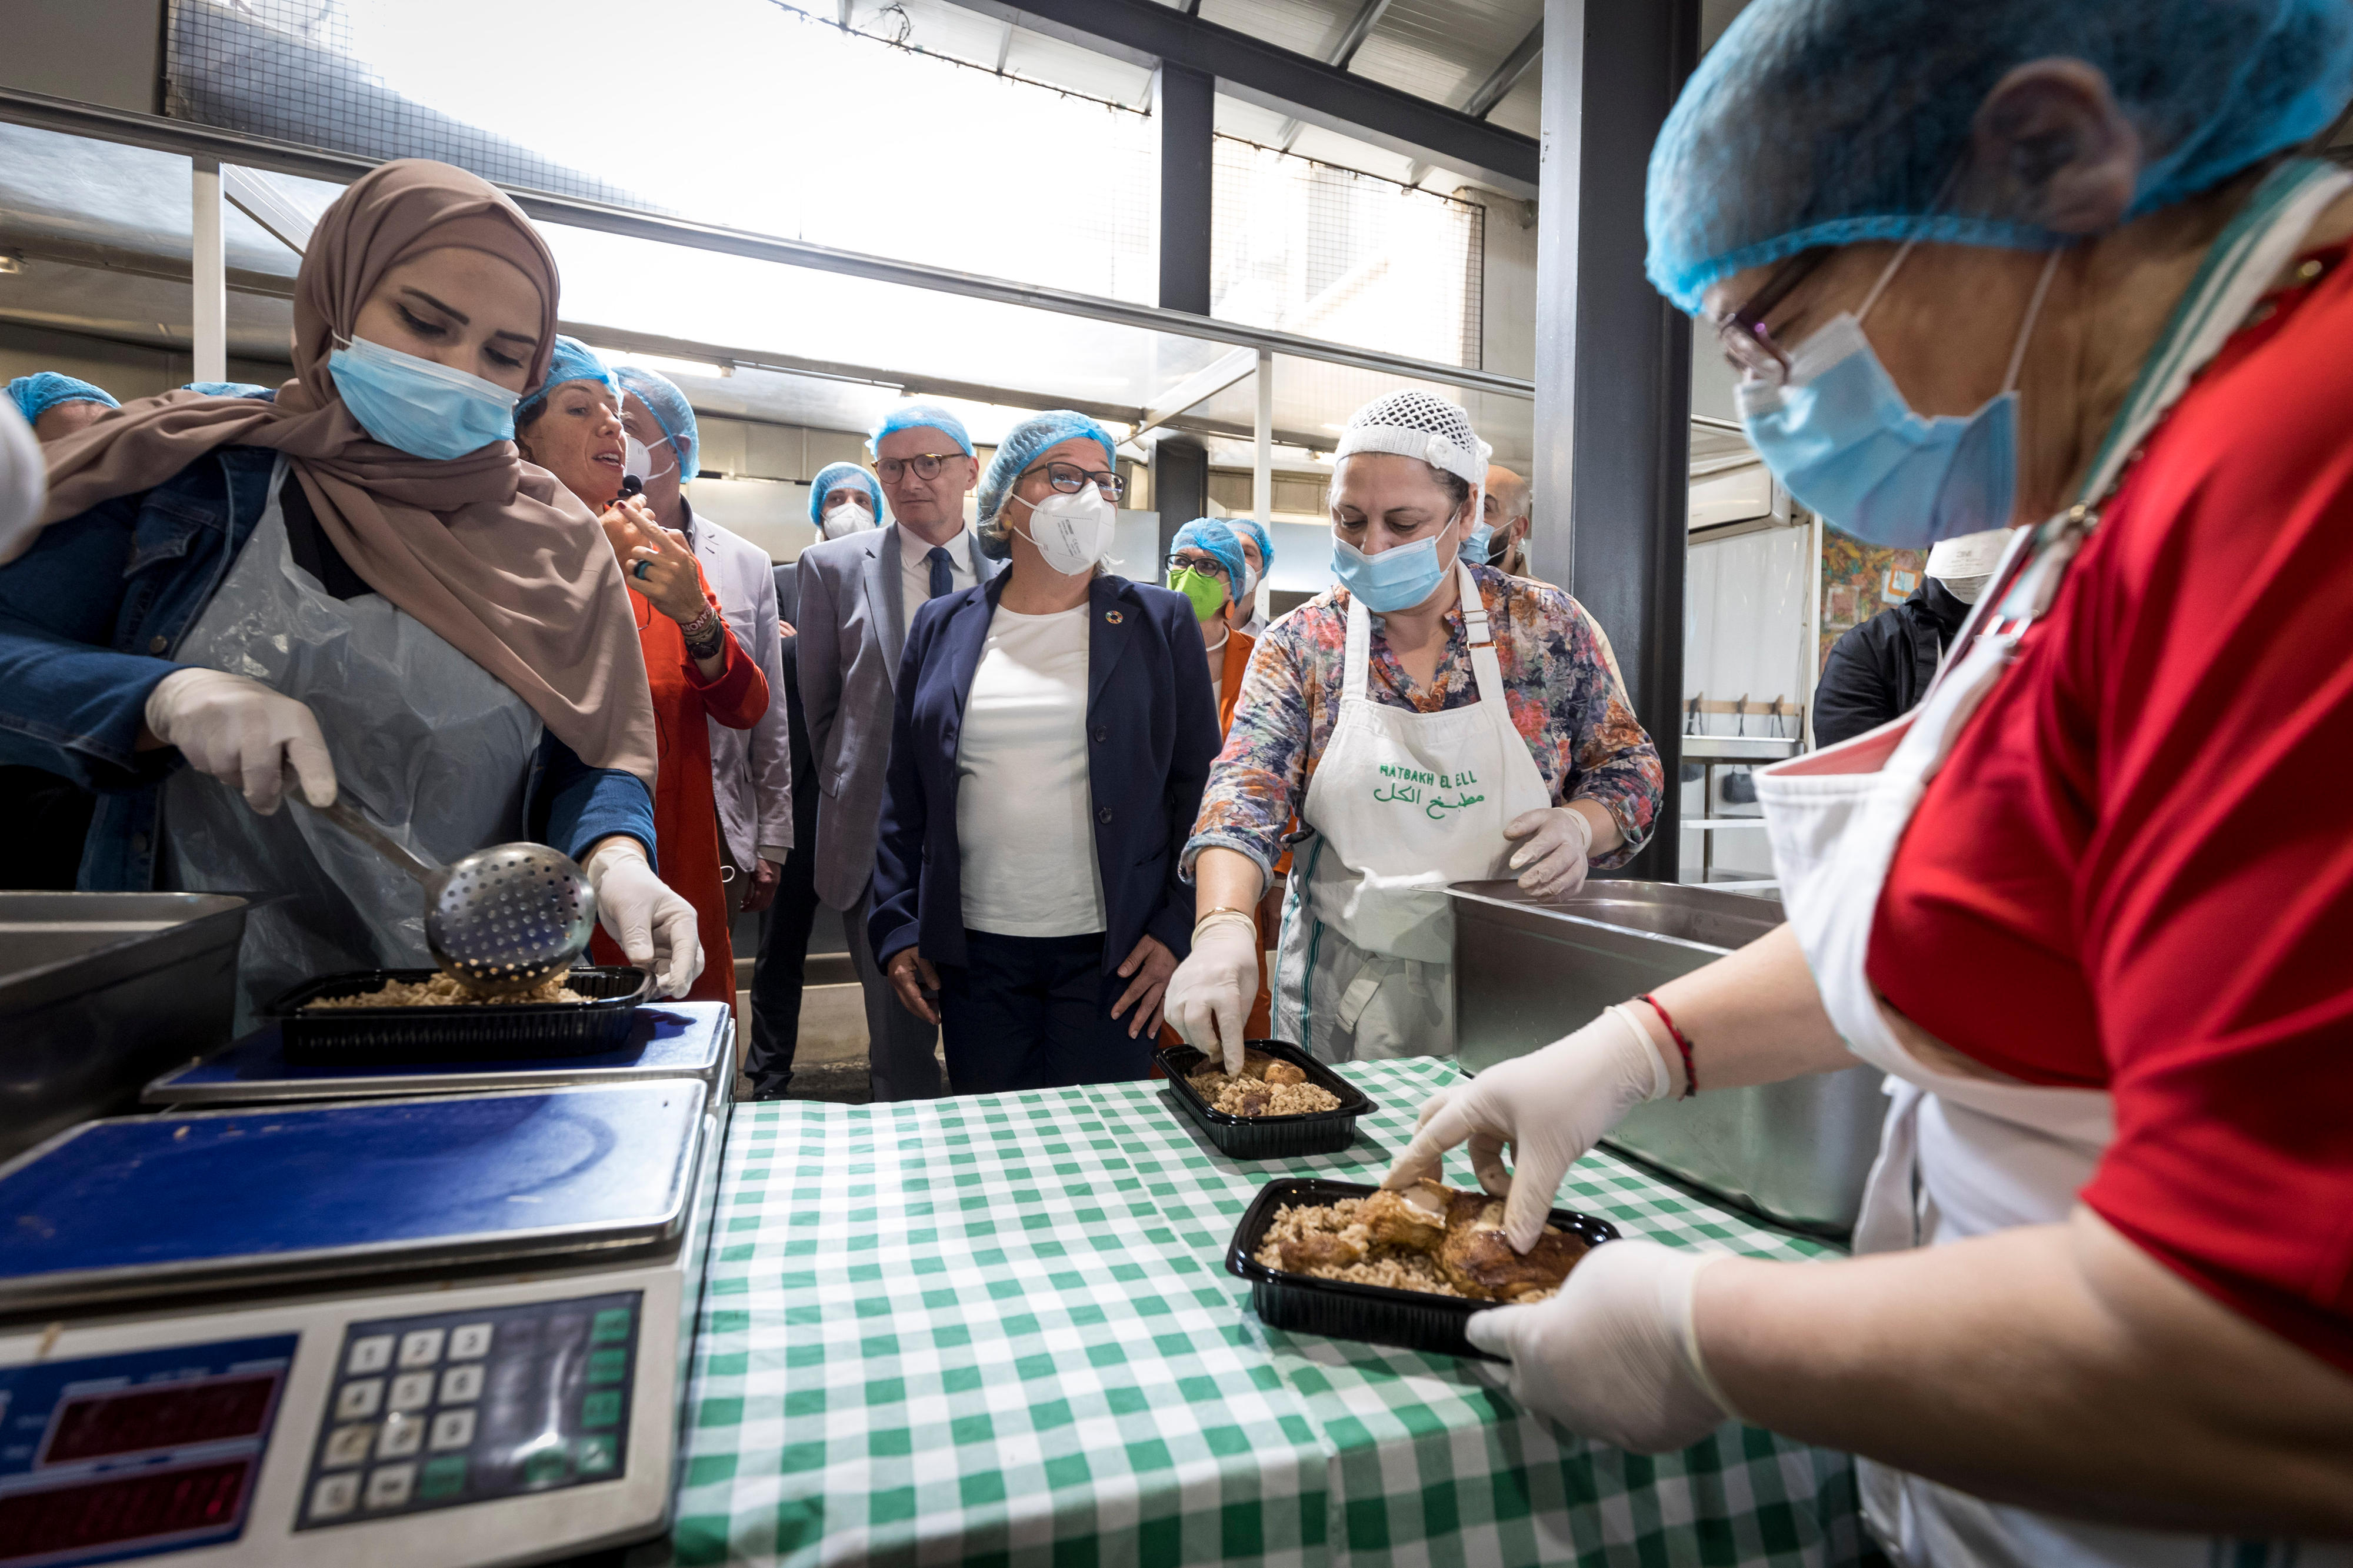 Bundesentwicklungsministerin Svenja Schulze in der Gemeindeküche des Projekts "Matbakh el Kell" ("Eine Küche für alle"). Hier werden Mahlzeiten für Menschen zubereitet, die von der Explosion 2020 im Beiruter Hafen besonders betroffen sind.